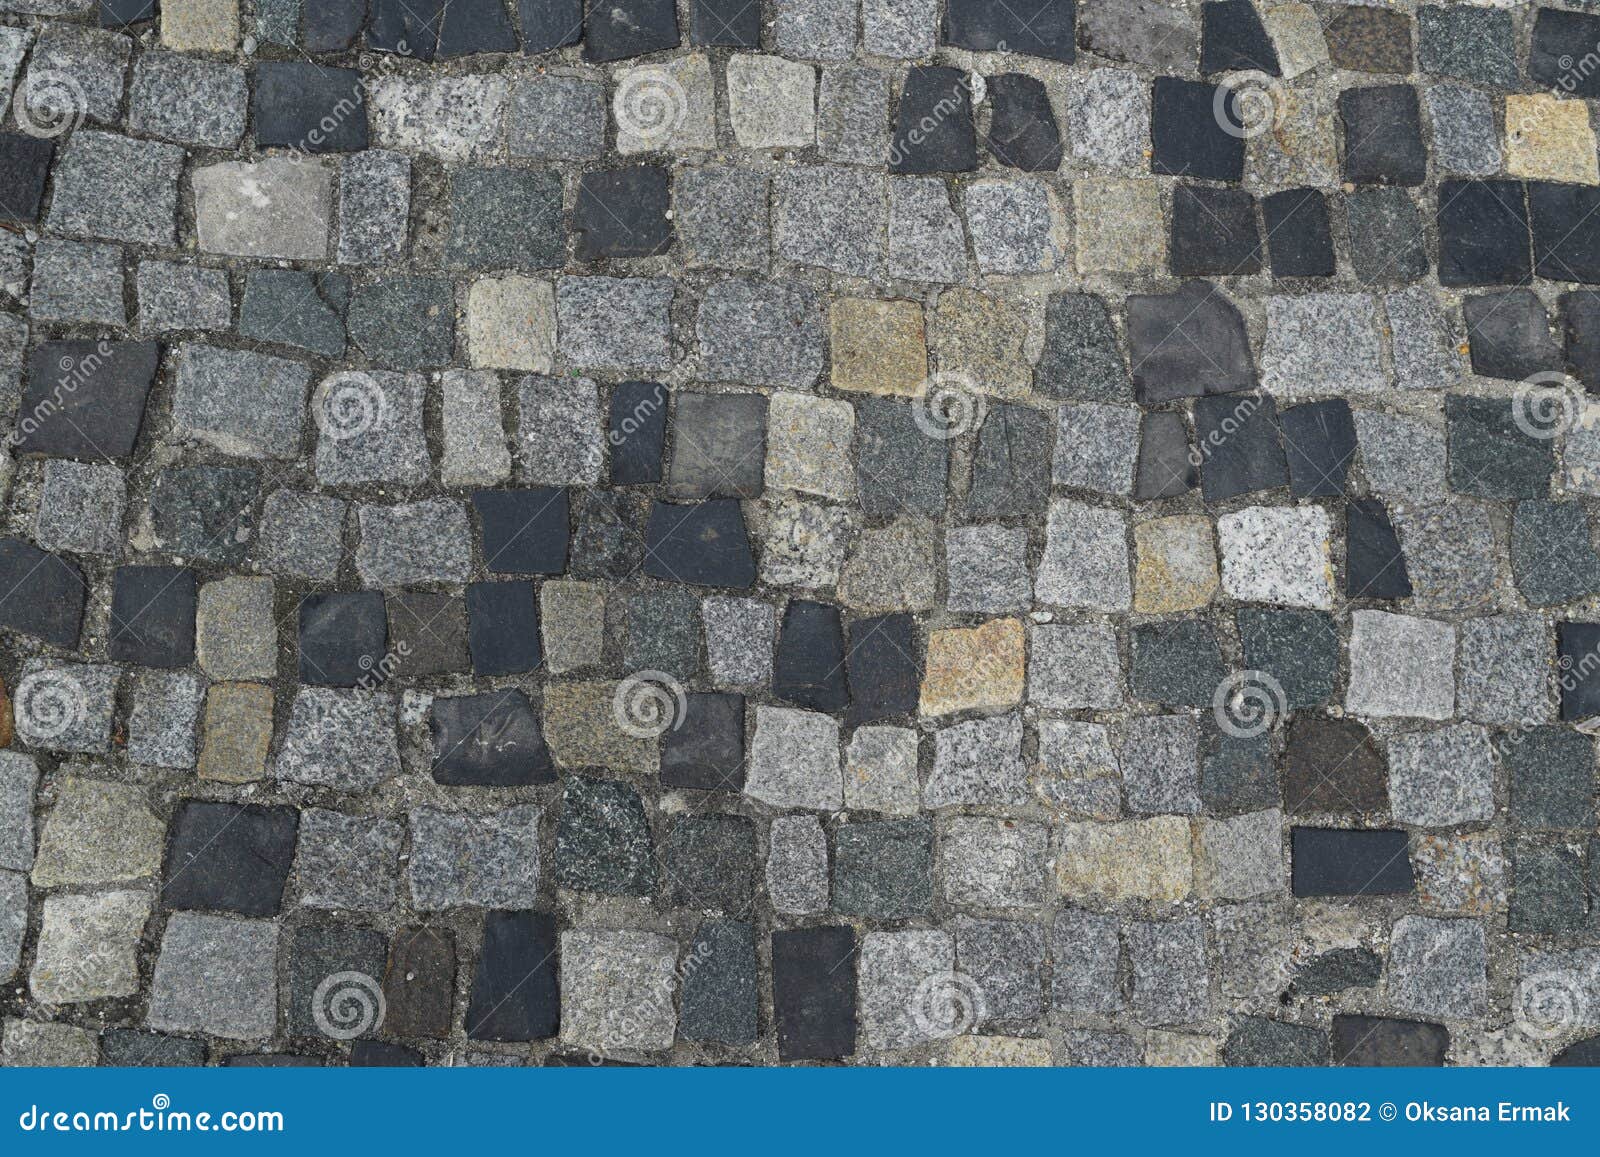 portuguese stone pavement or calcada portuguesa road